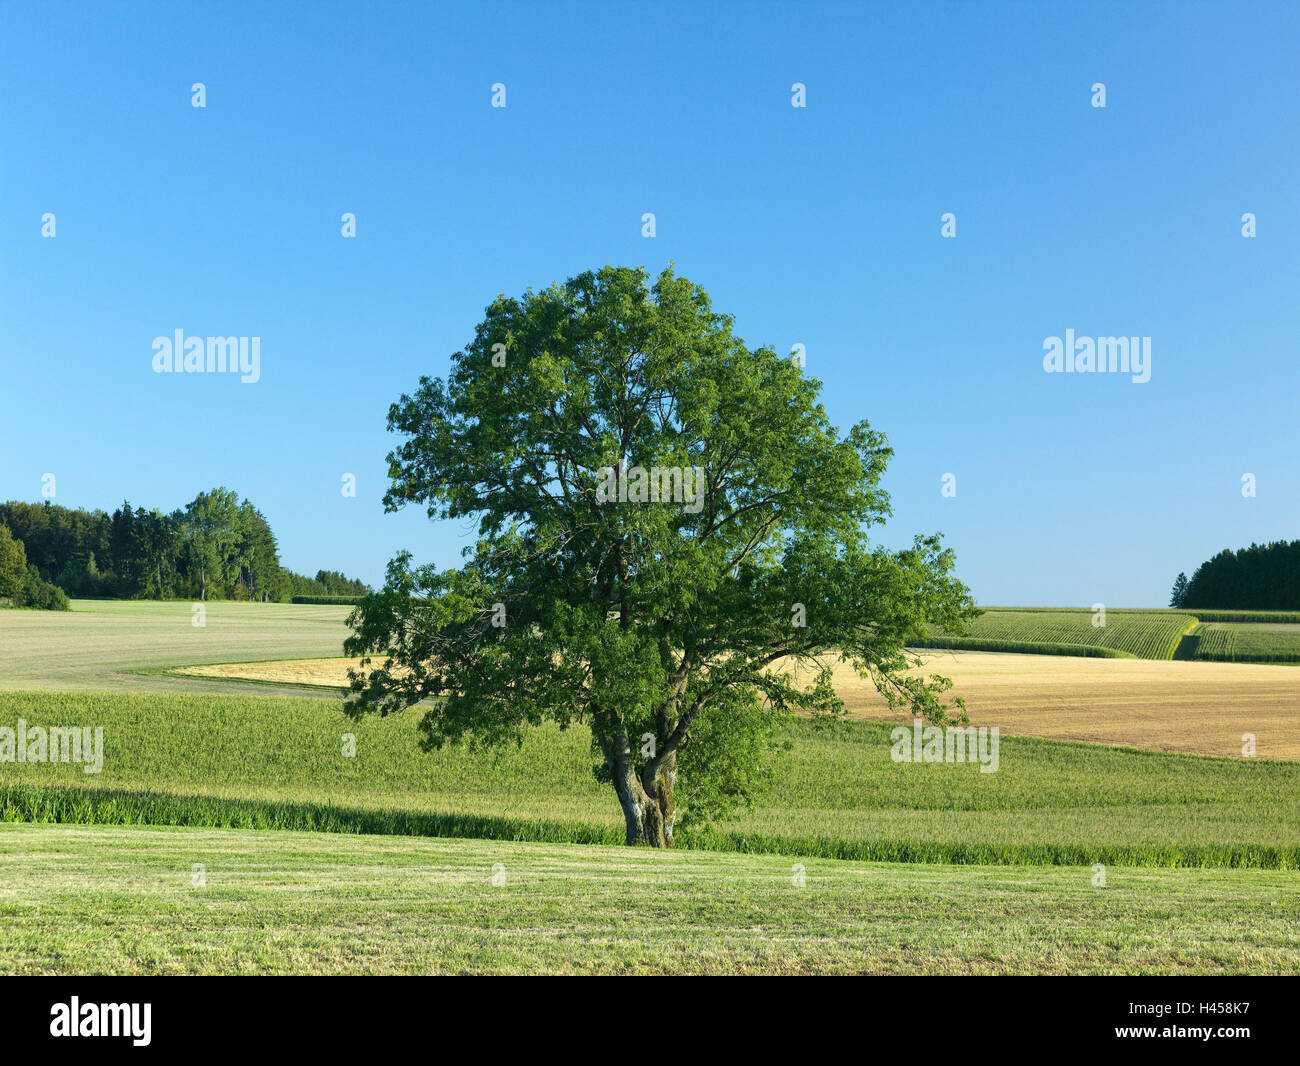 Germany, Baden-Wurttemberg, Albuch, ash, summer, tree, fields, scenery, loud stone, corn field, summer, meadow, heaven, blue, copy space, Stock Photo